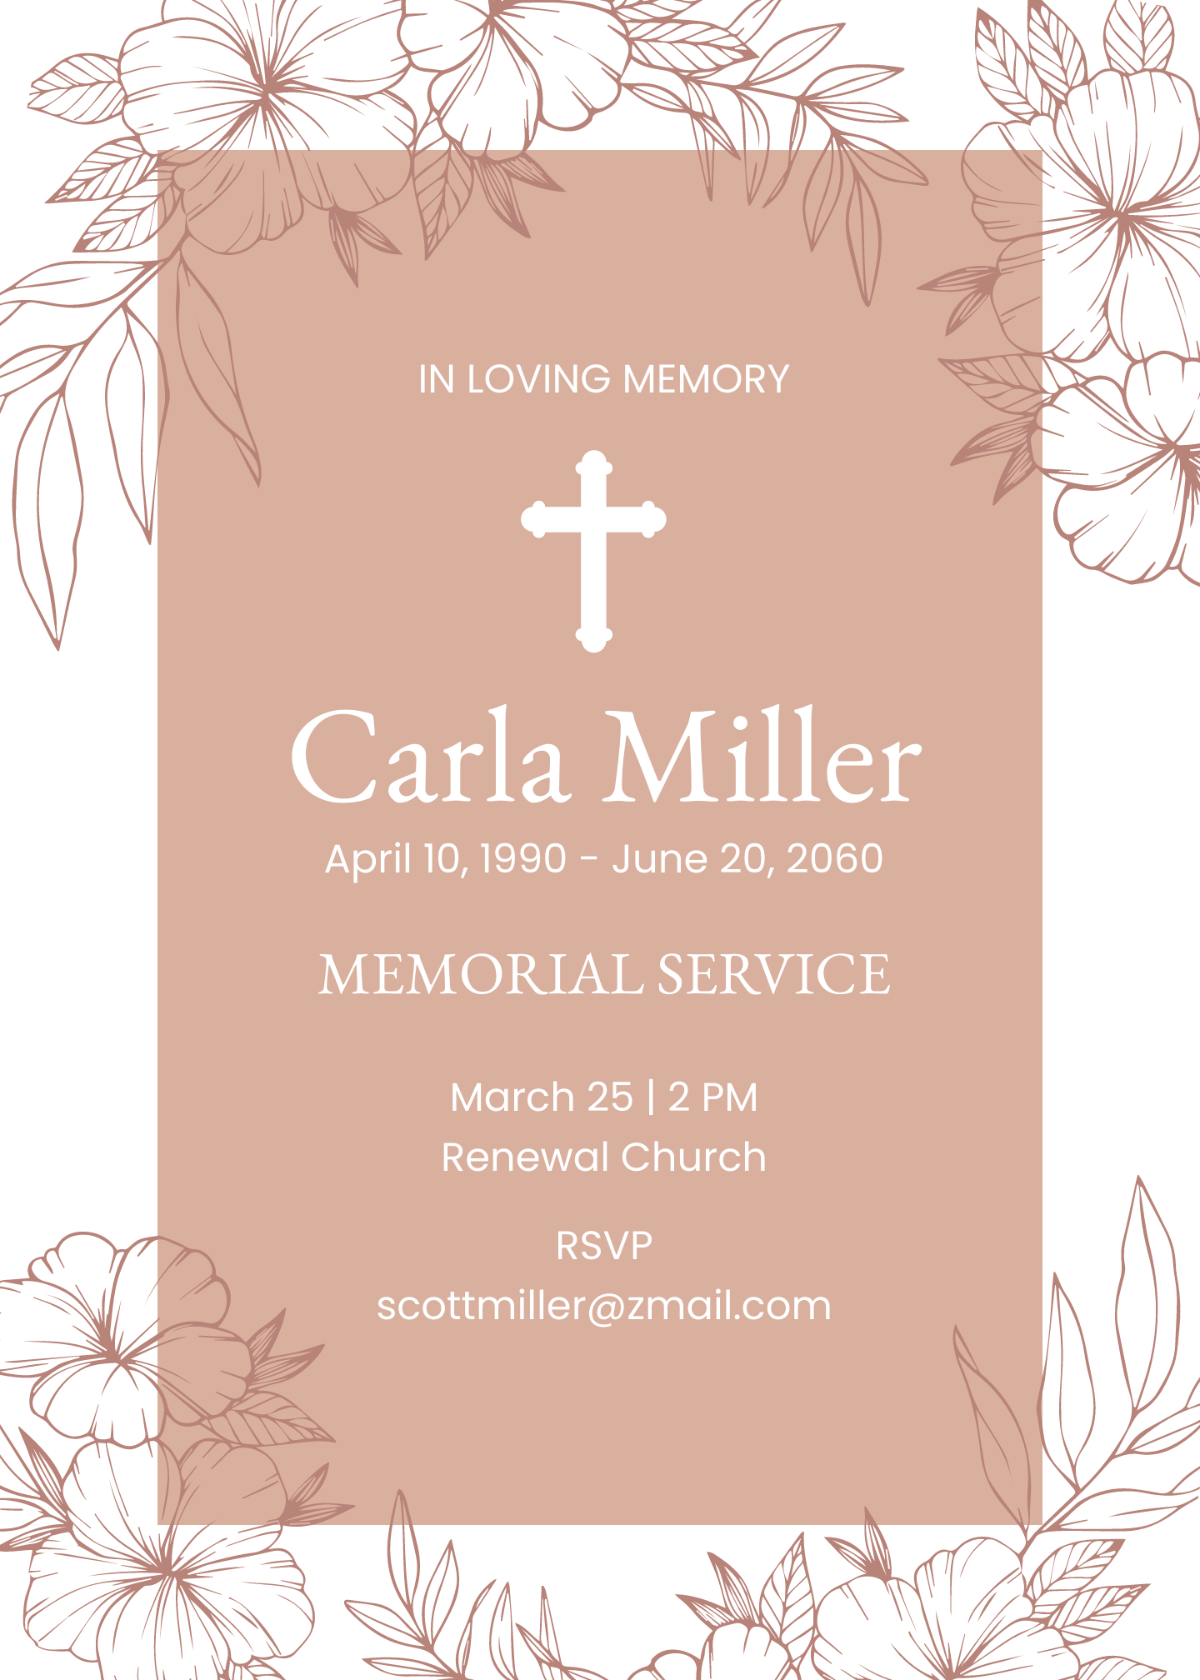 Sample Funeral Memorial Invitation Template